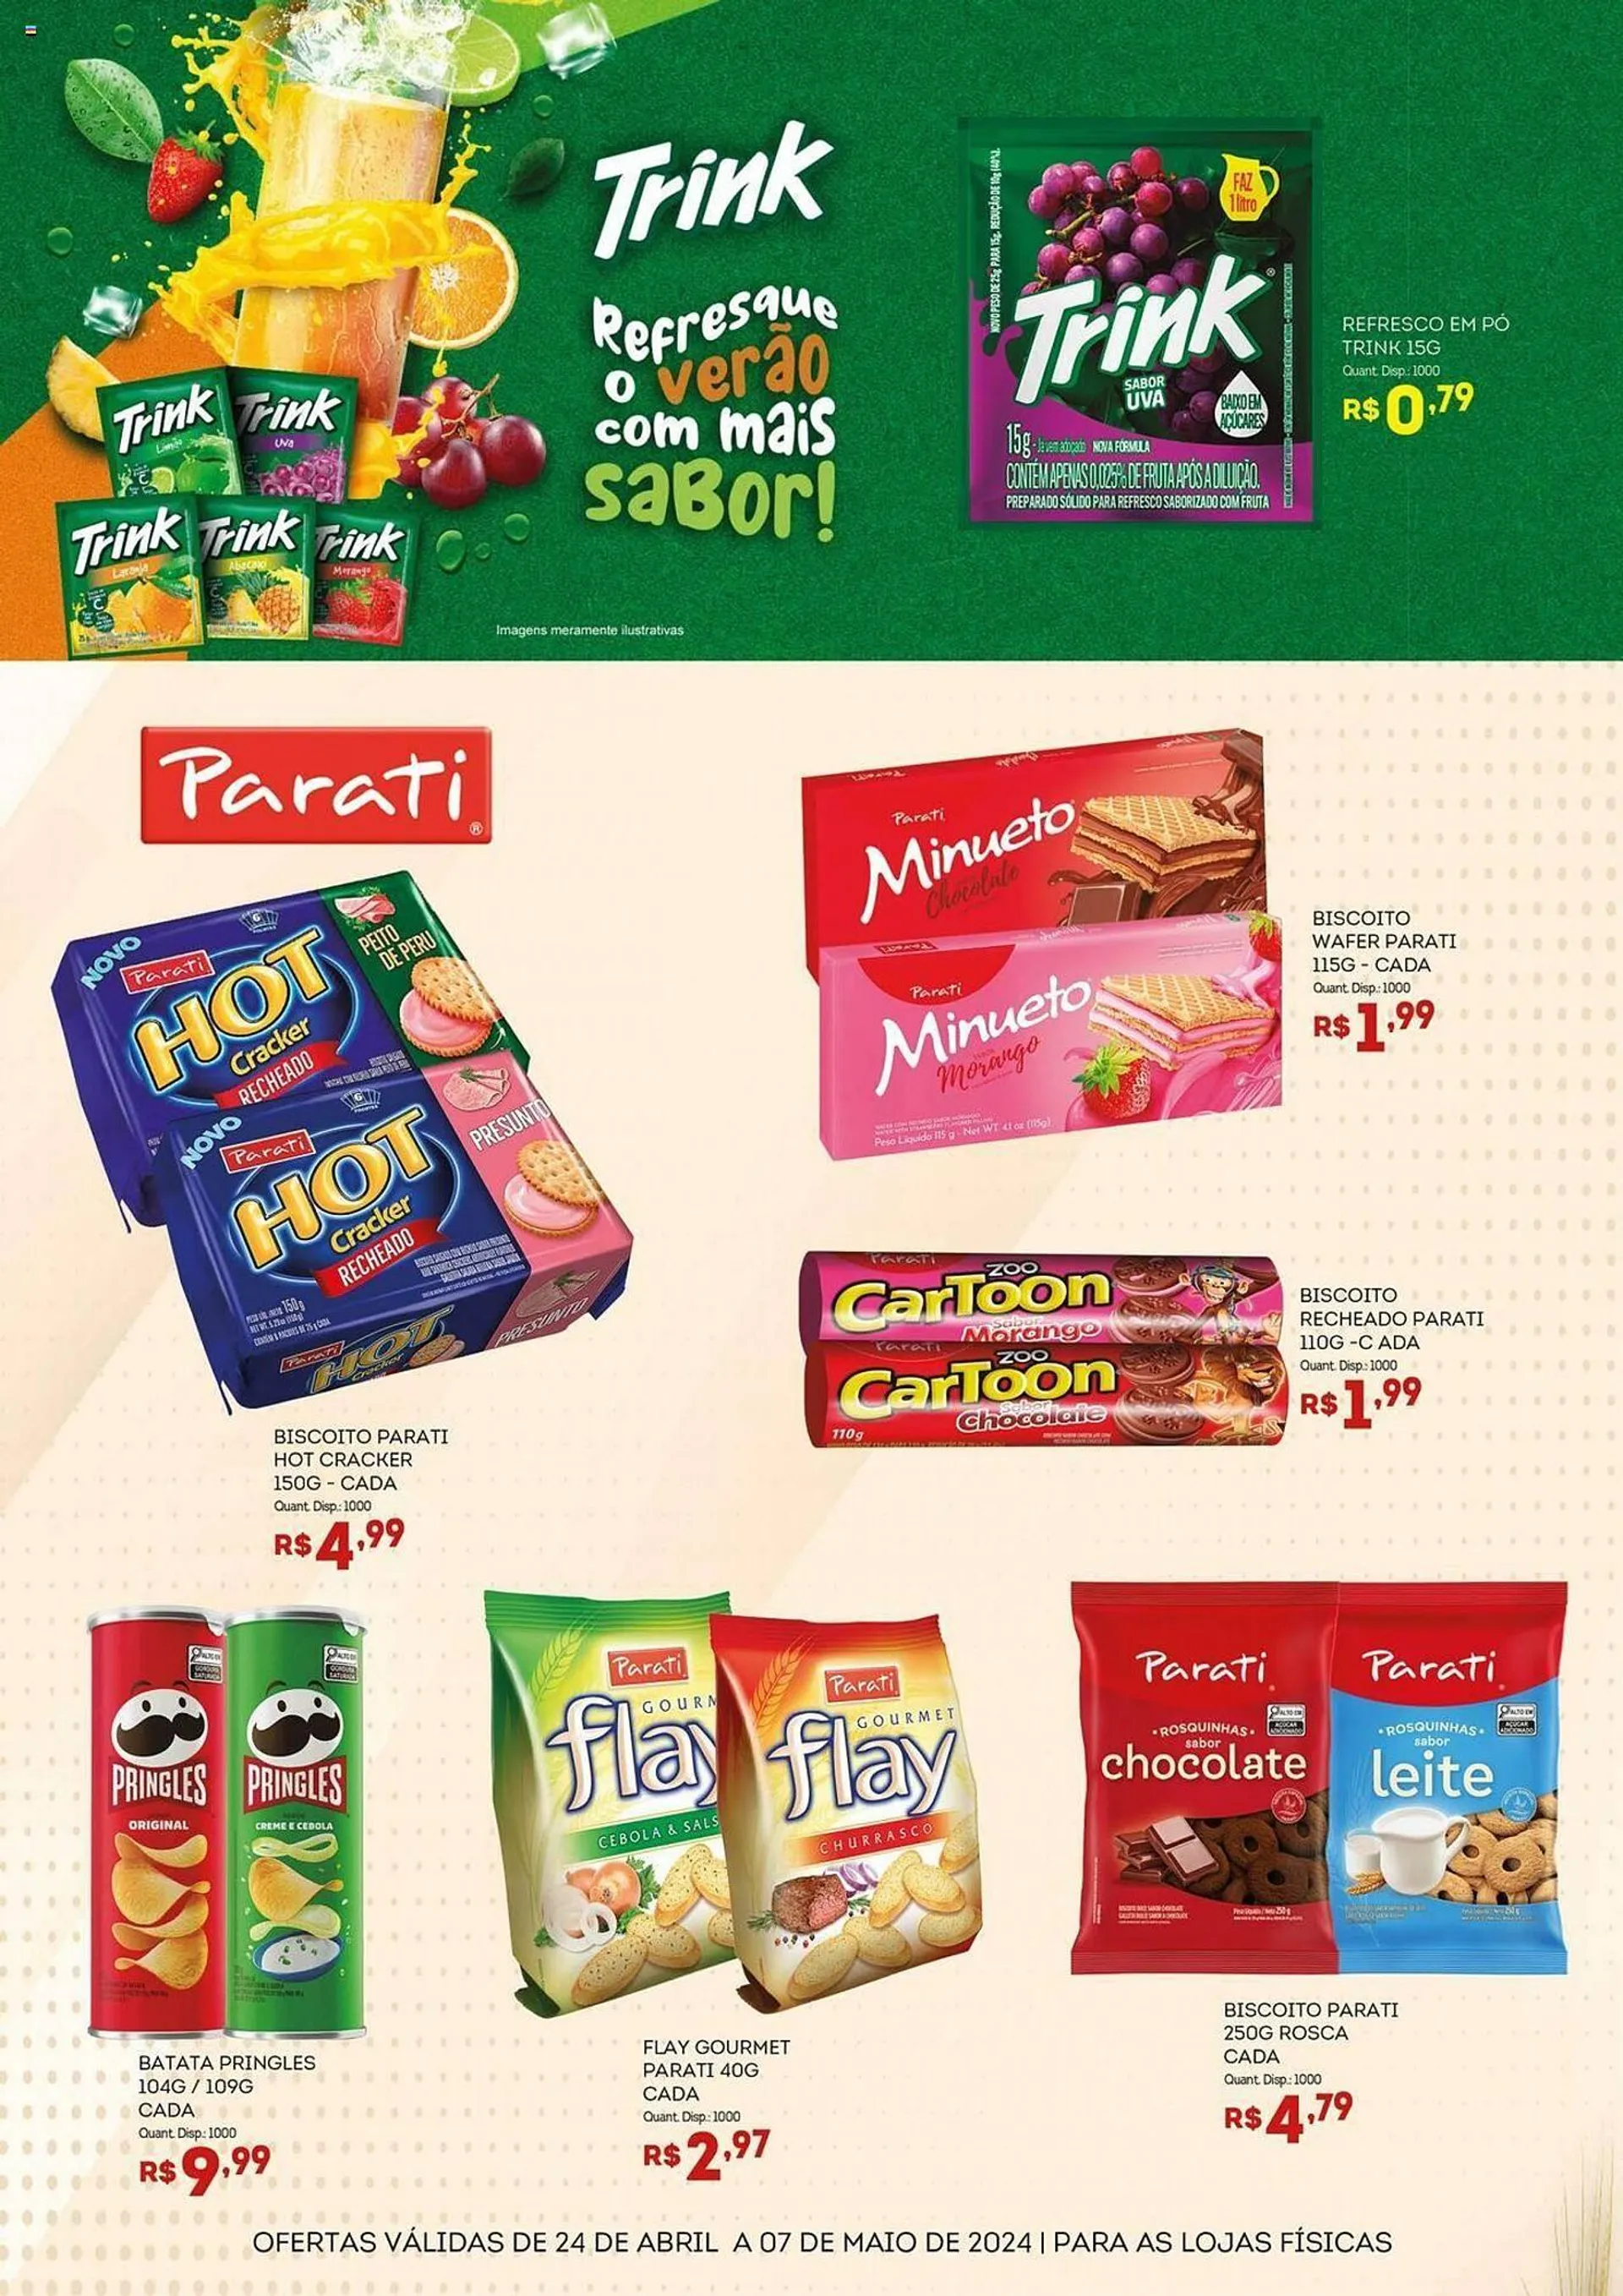 Catálogo Bistek Supermercados - 2